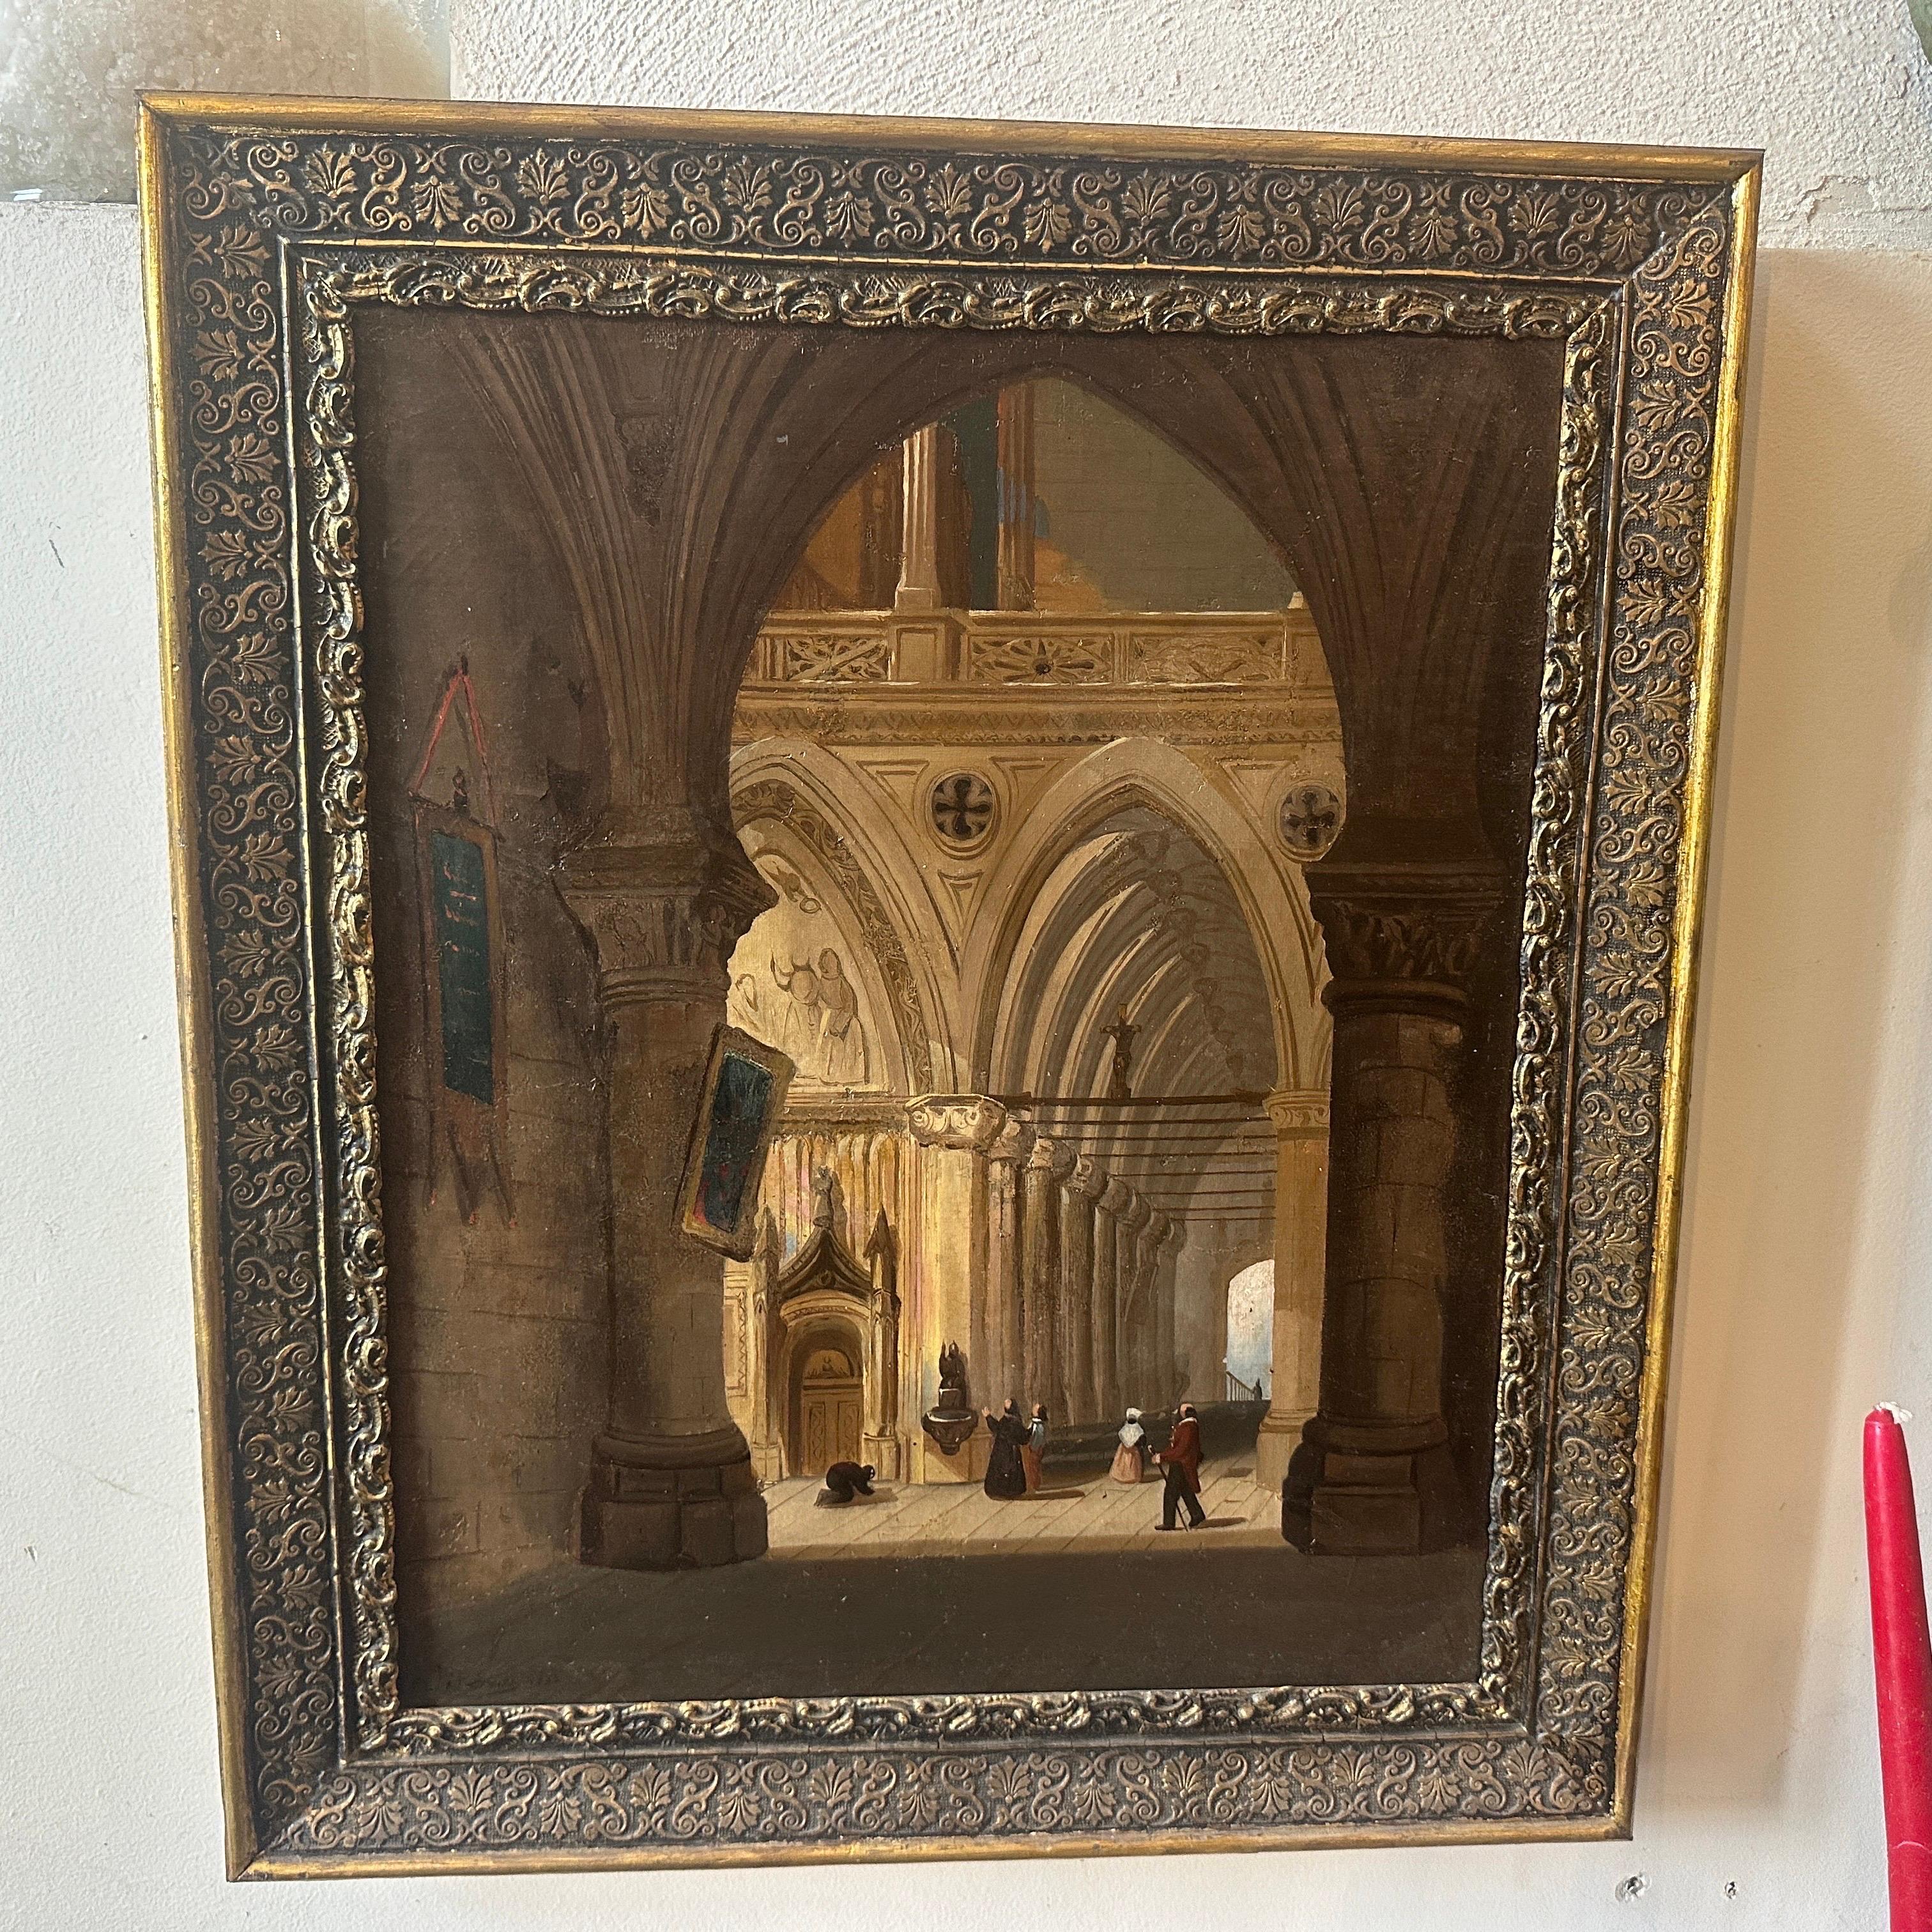 Cette peinture itinérante représentant l'intérieur d'une église témoigne des influences artistiques et religieuses de l'époque. Le tableau présente une disposition équilibrée des éléments à l'intérieur de l'église. L'artiste s'est attaché à créer un